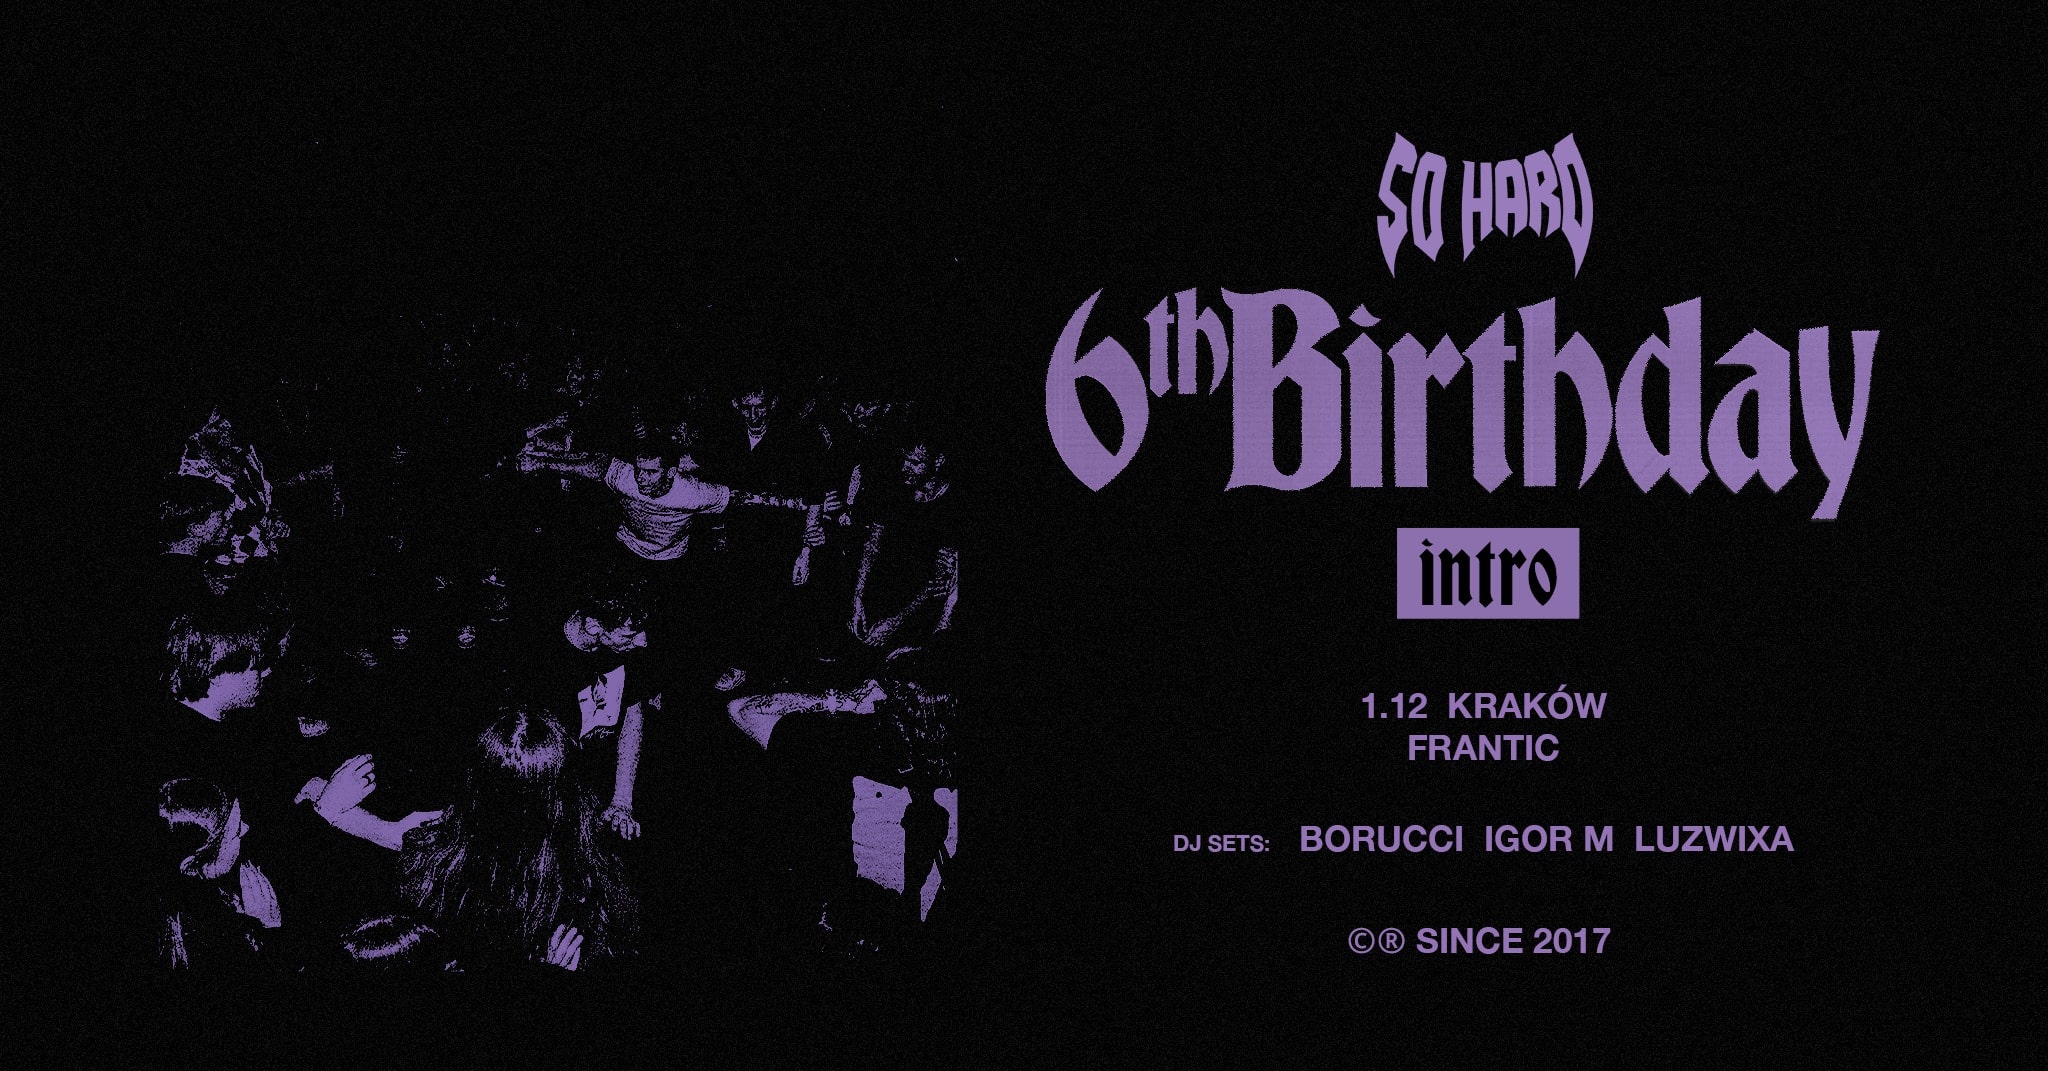 SO HARD BIRTHDAY INTRO // Kraków 1.12